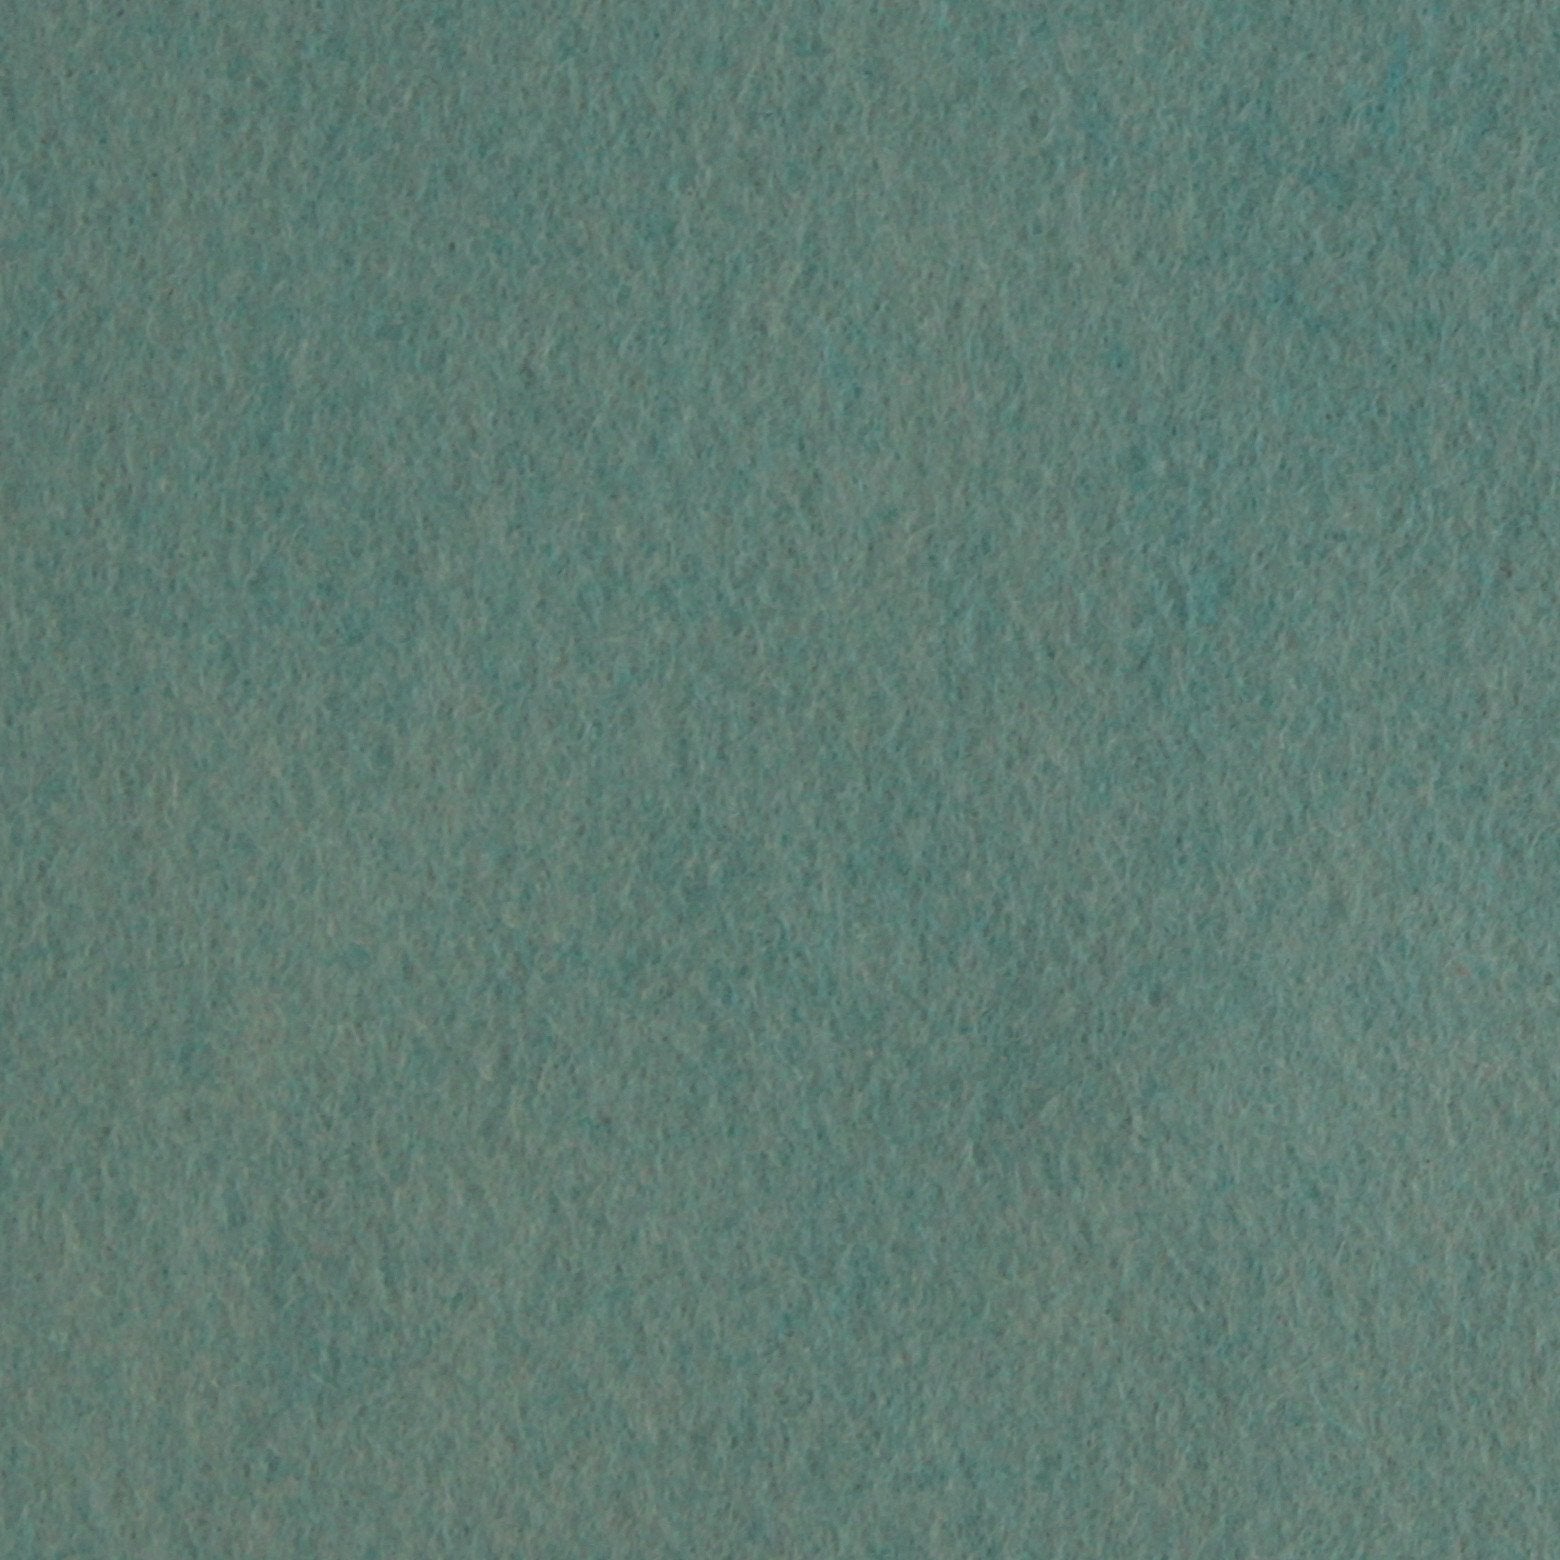 Blue Wool Blend Felt, Benzie Reserve – Benzie Design